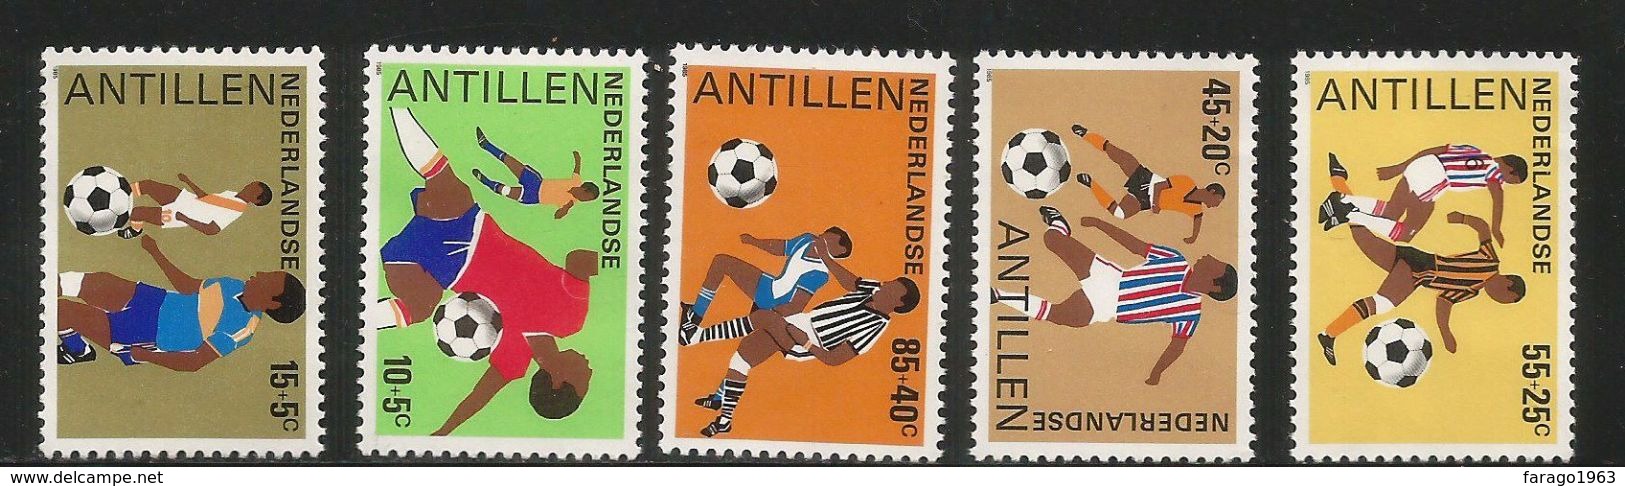 1985 Netherlands Antilles Football  Complete Set Of 5 MNH - Curacao, Netherlands Antilles, Aruba